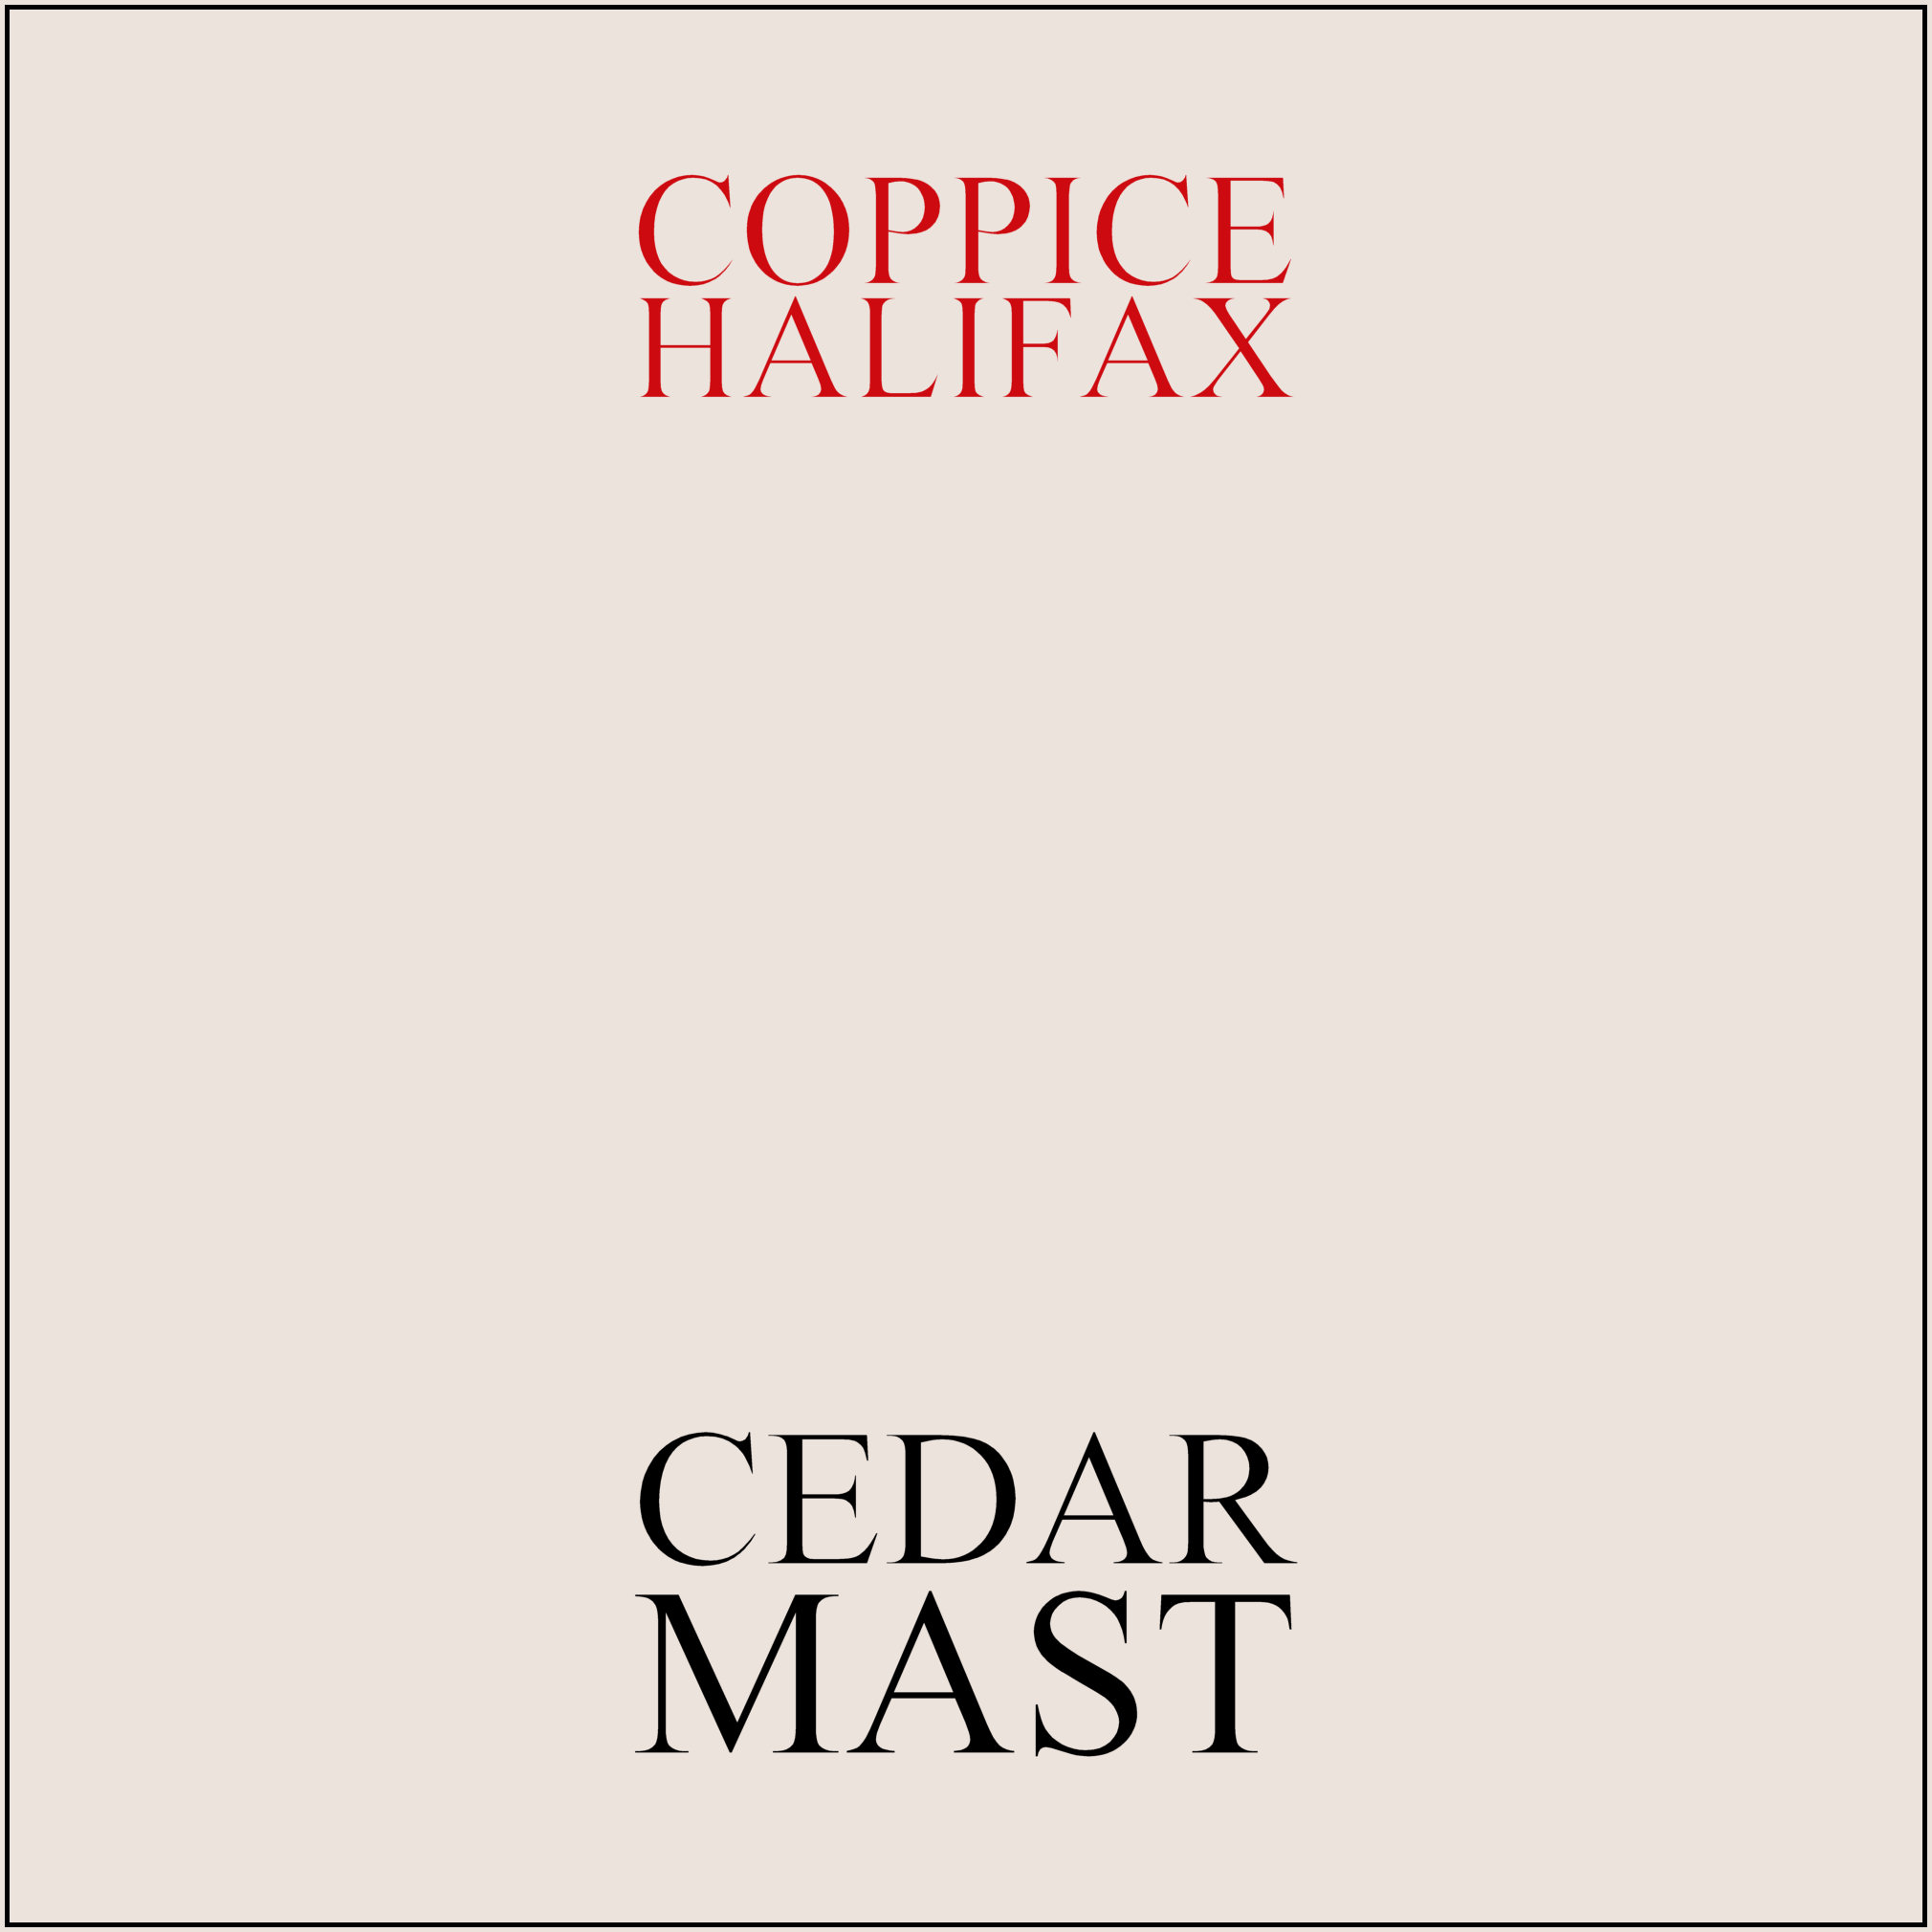 Coppice Halifax – Cedar Mast